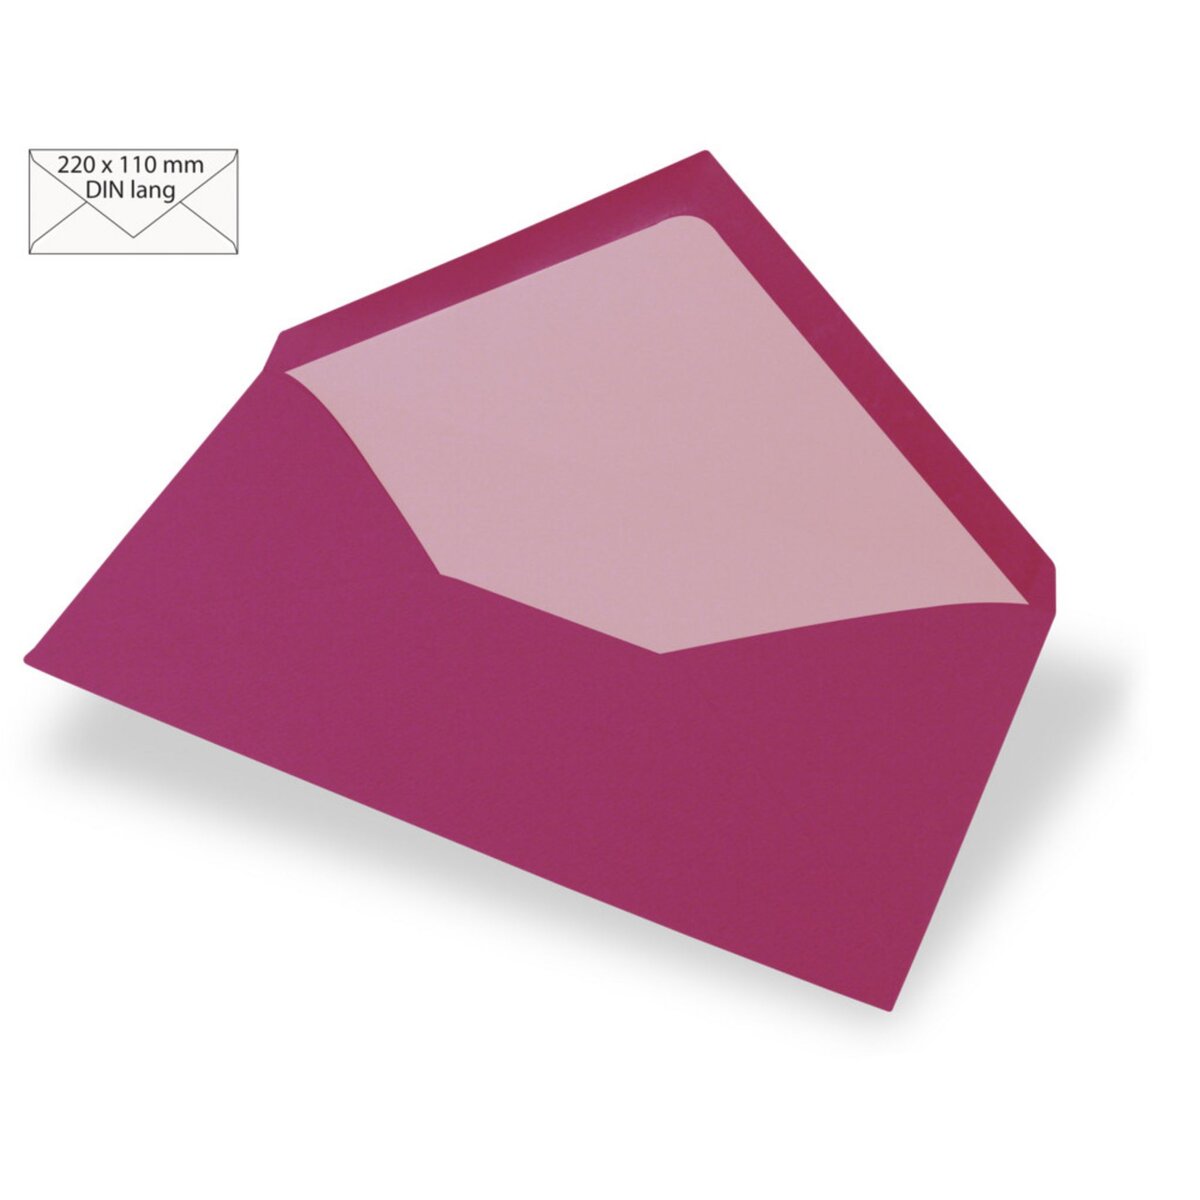 Enveloppe format DIN lang (220 x 110 mm)